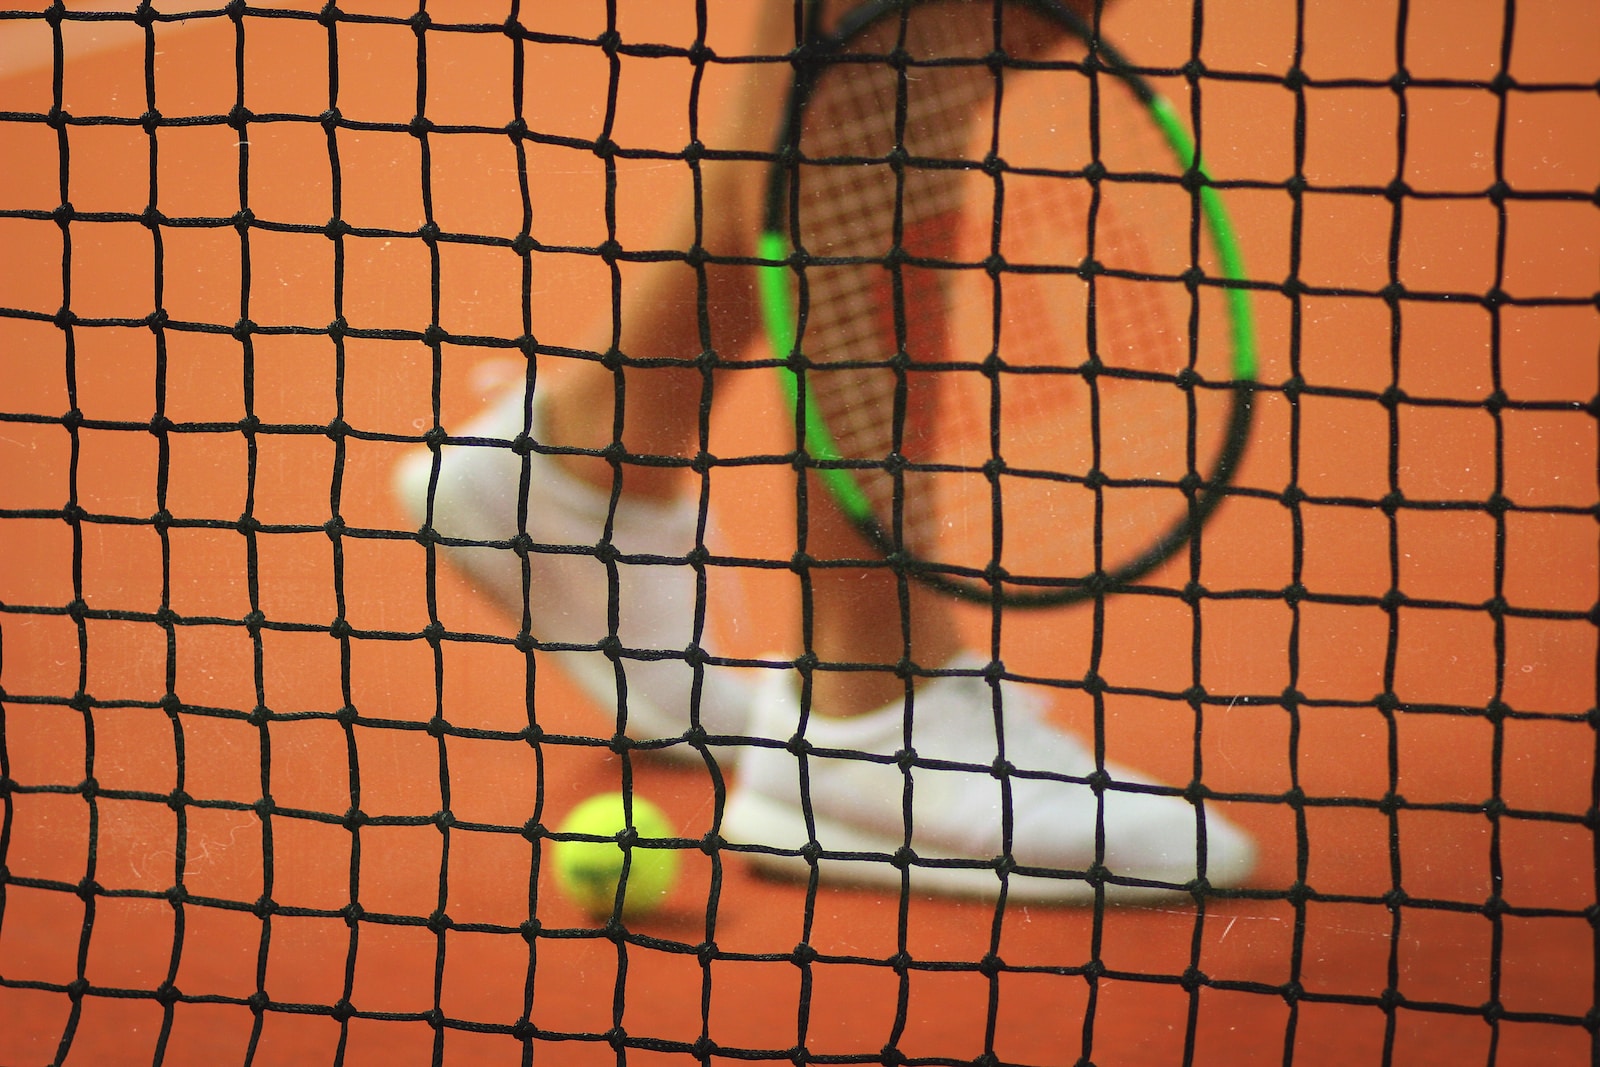 Joueur de tennis avec sa raquette et une balle devant le filet